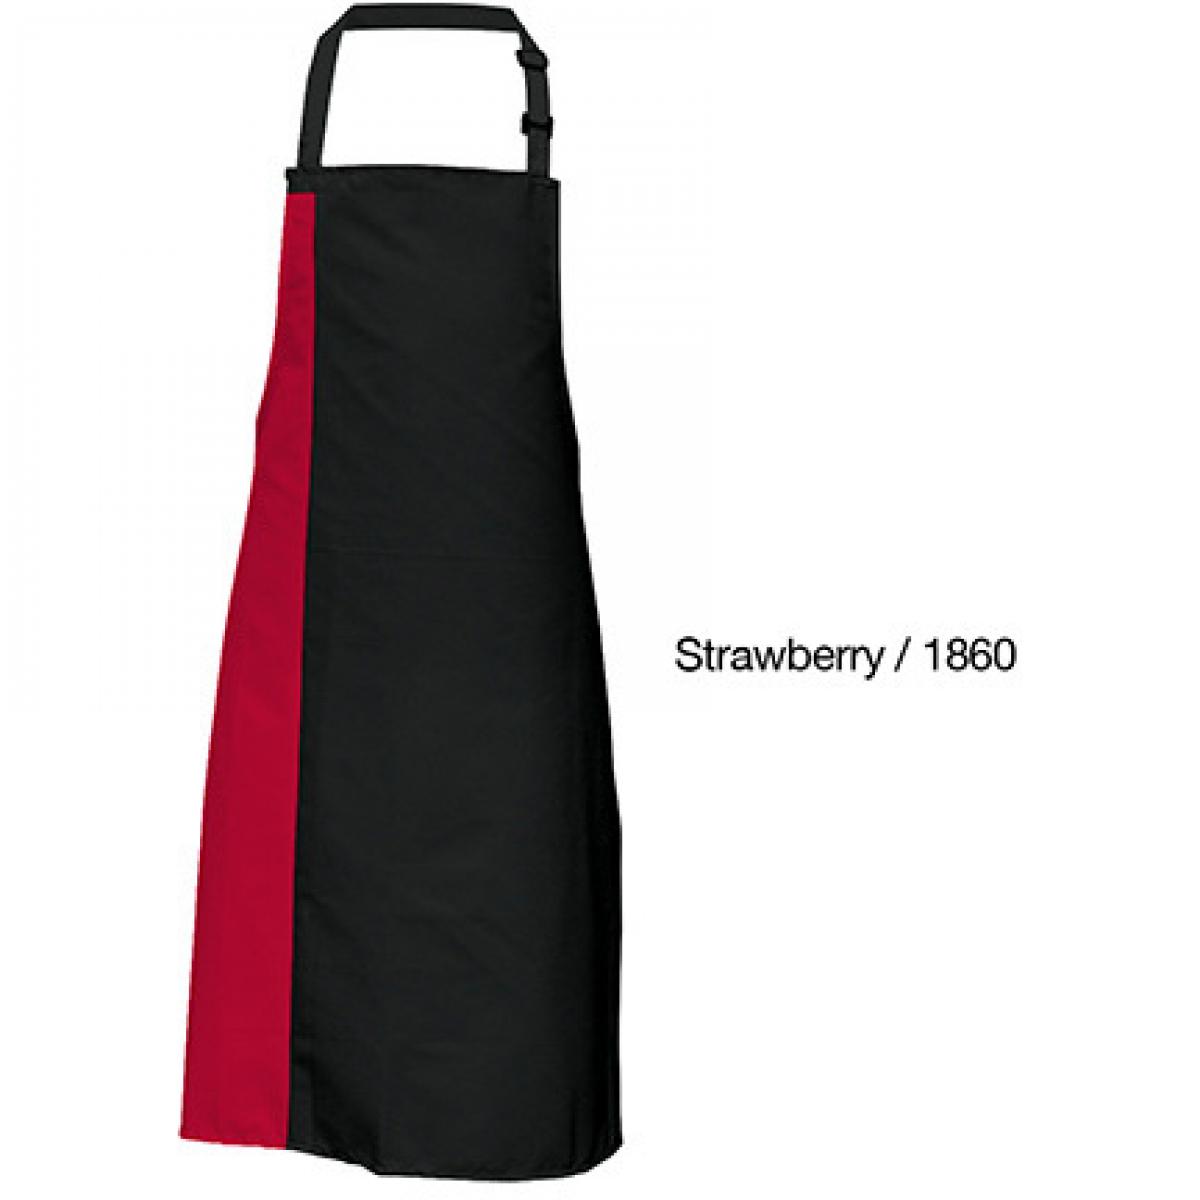 Hersteller: Link Kitchen Wear Herstellernummer: DS8572 Artikelbezeichnung: Duo Apron - 72 x 85 cm - Waschbar bis 60 °C Farbe: Black/Strawberry Red (ca. Pantone 186)